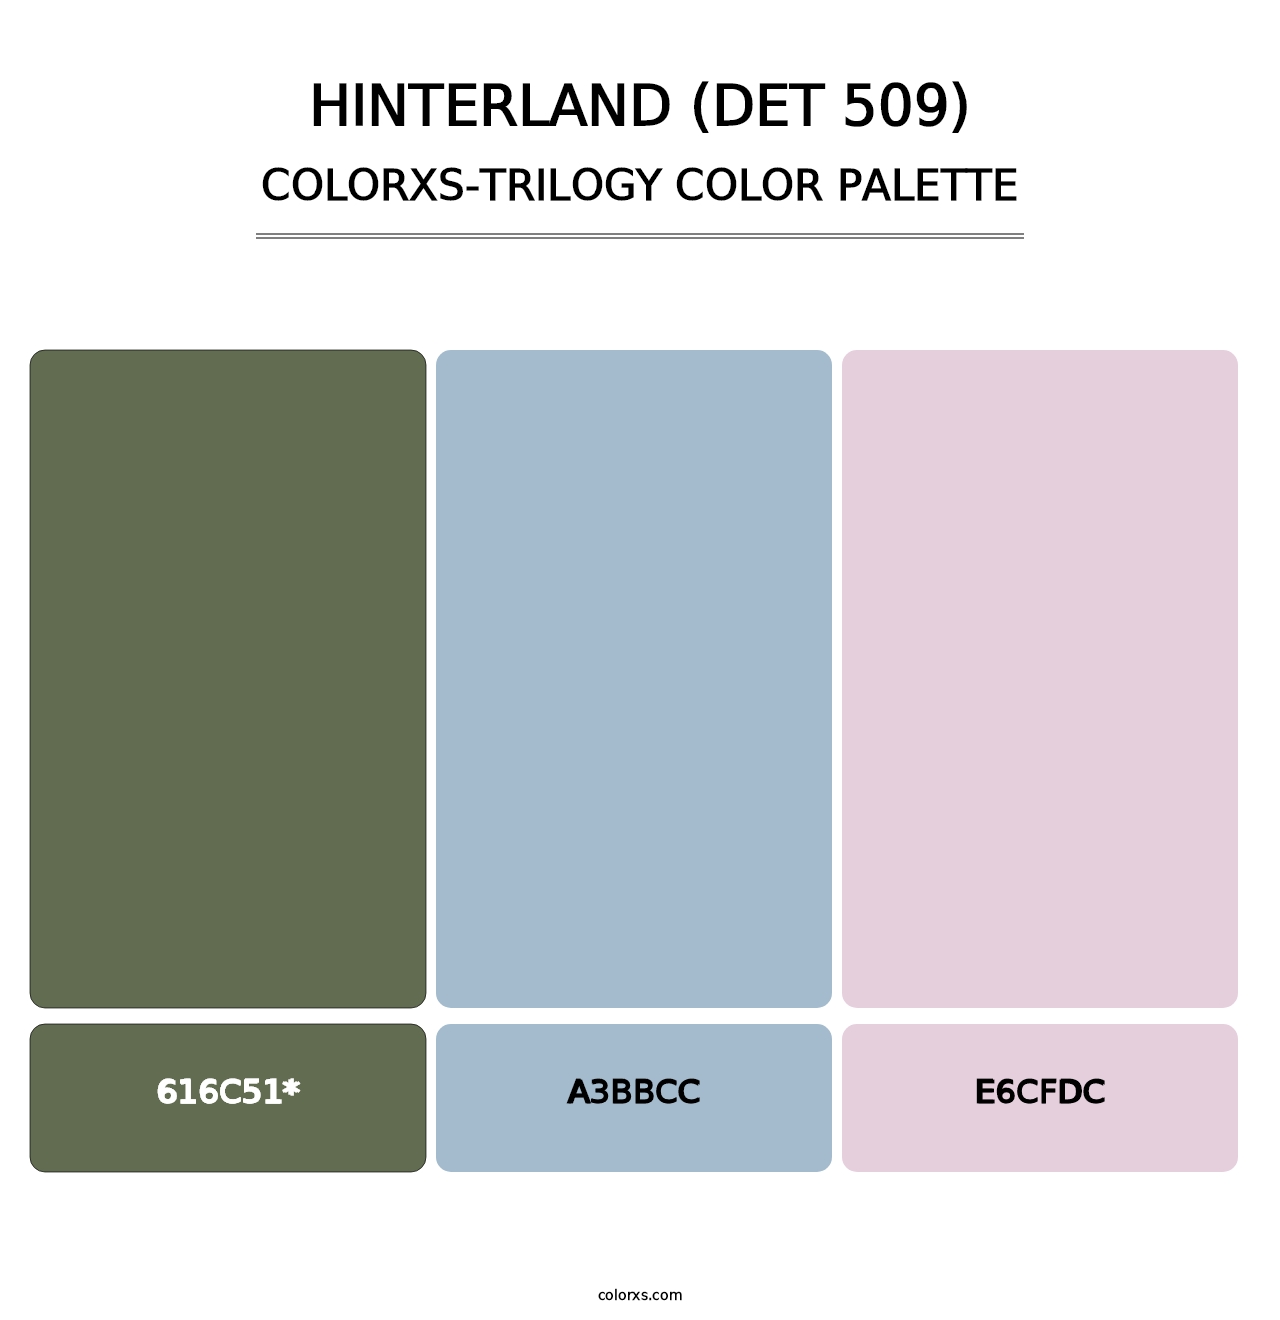 Hinterland (DET 509) - Colorxs Trilogy Palette